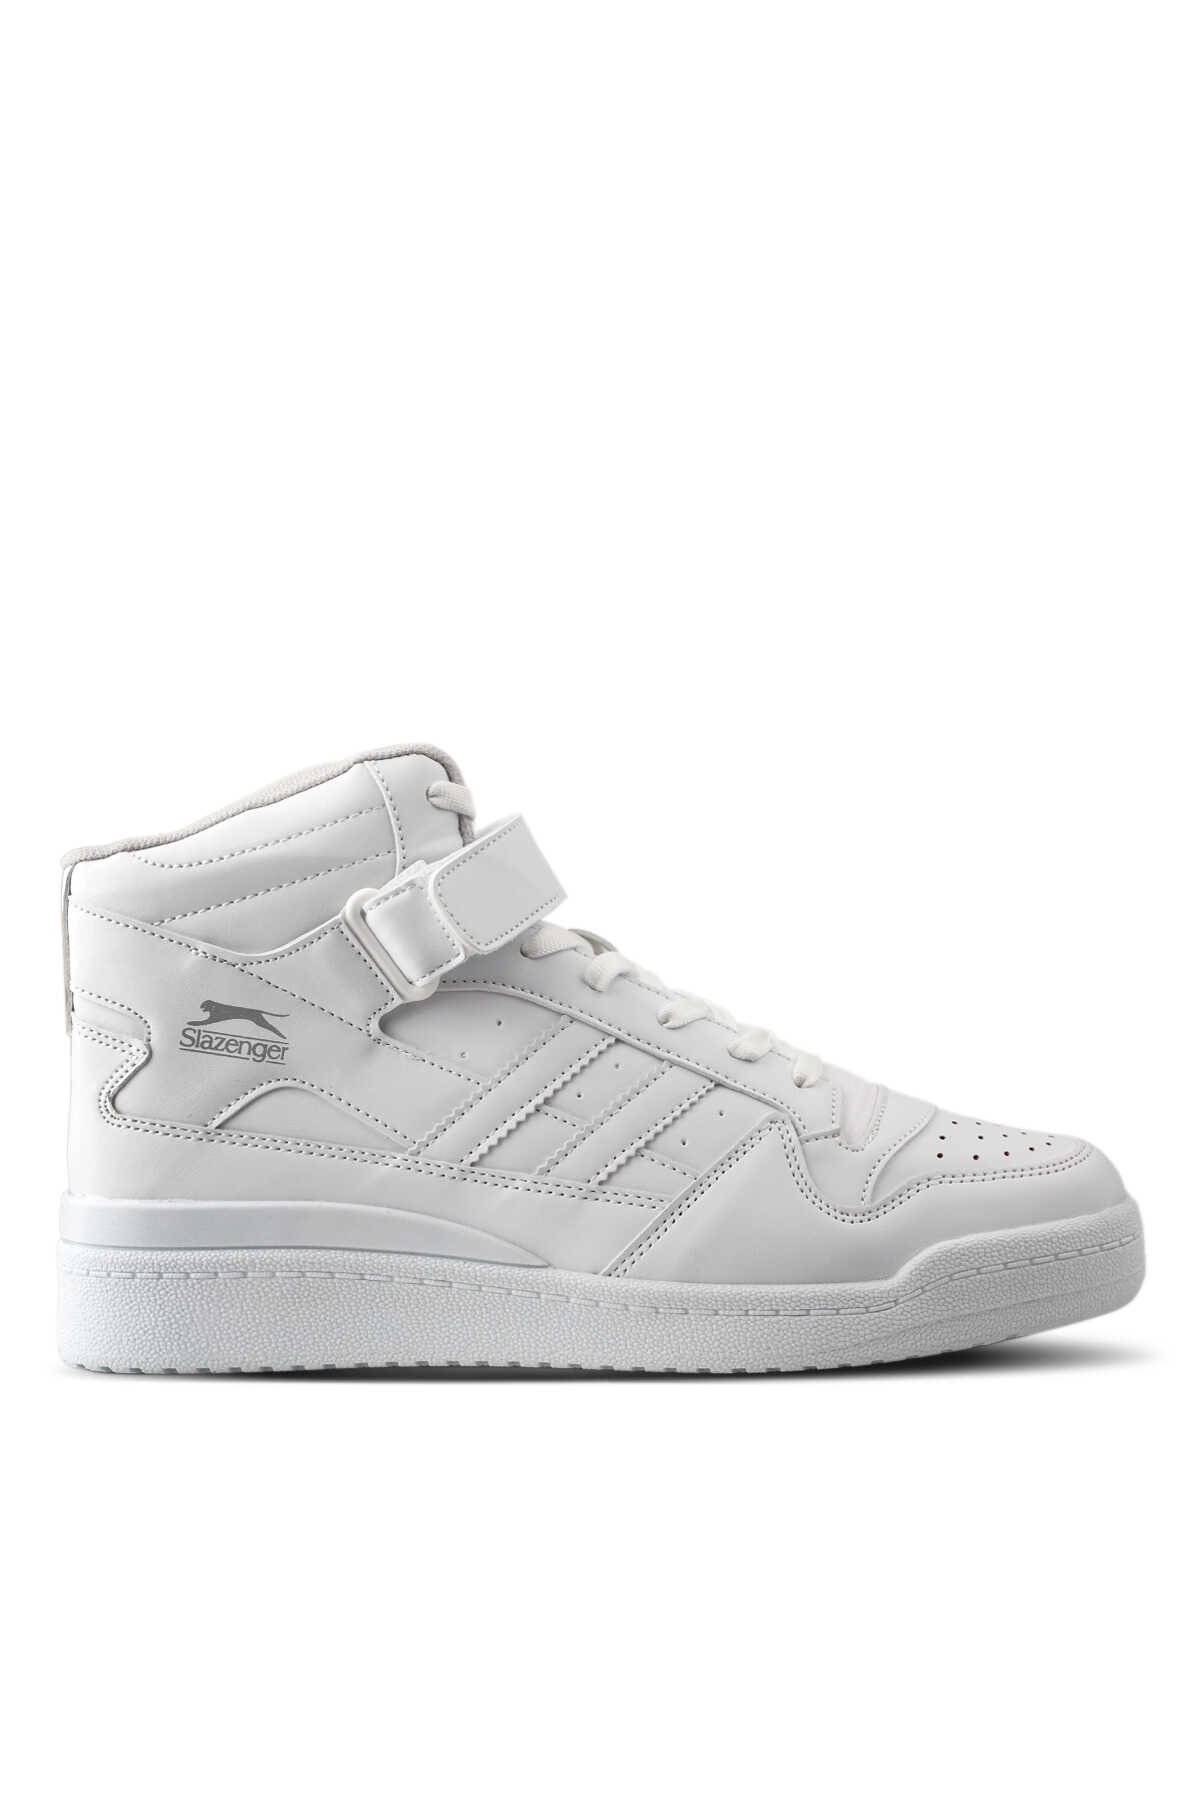 Slazenger - Slazenger BAMBOO Sneaker Erkek Ayakkabı Beyaz